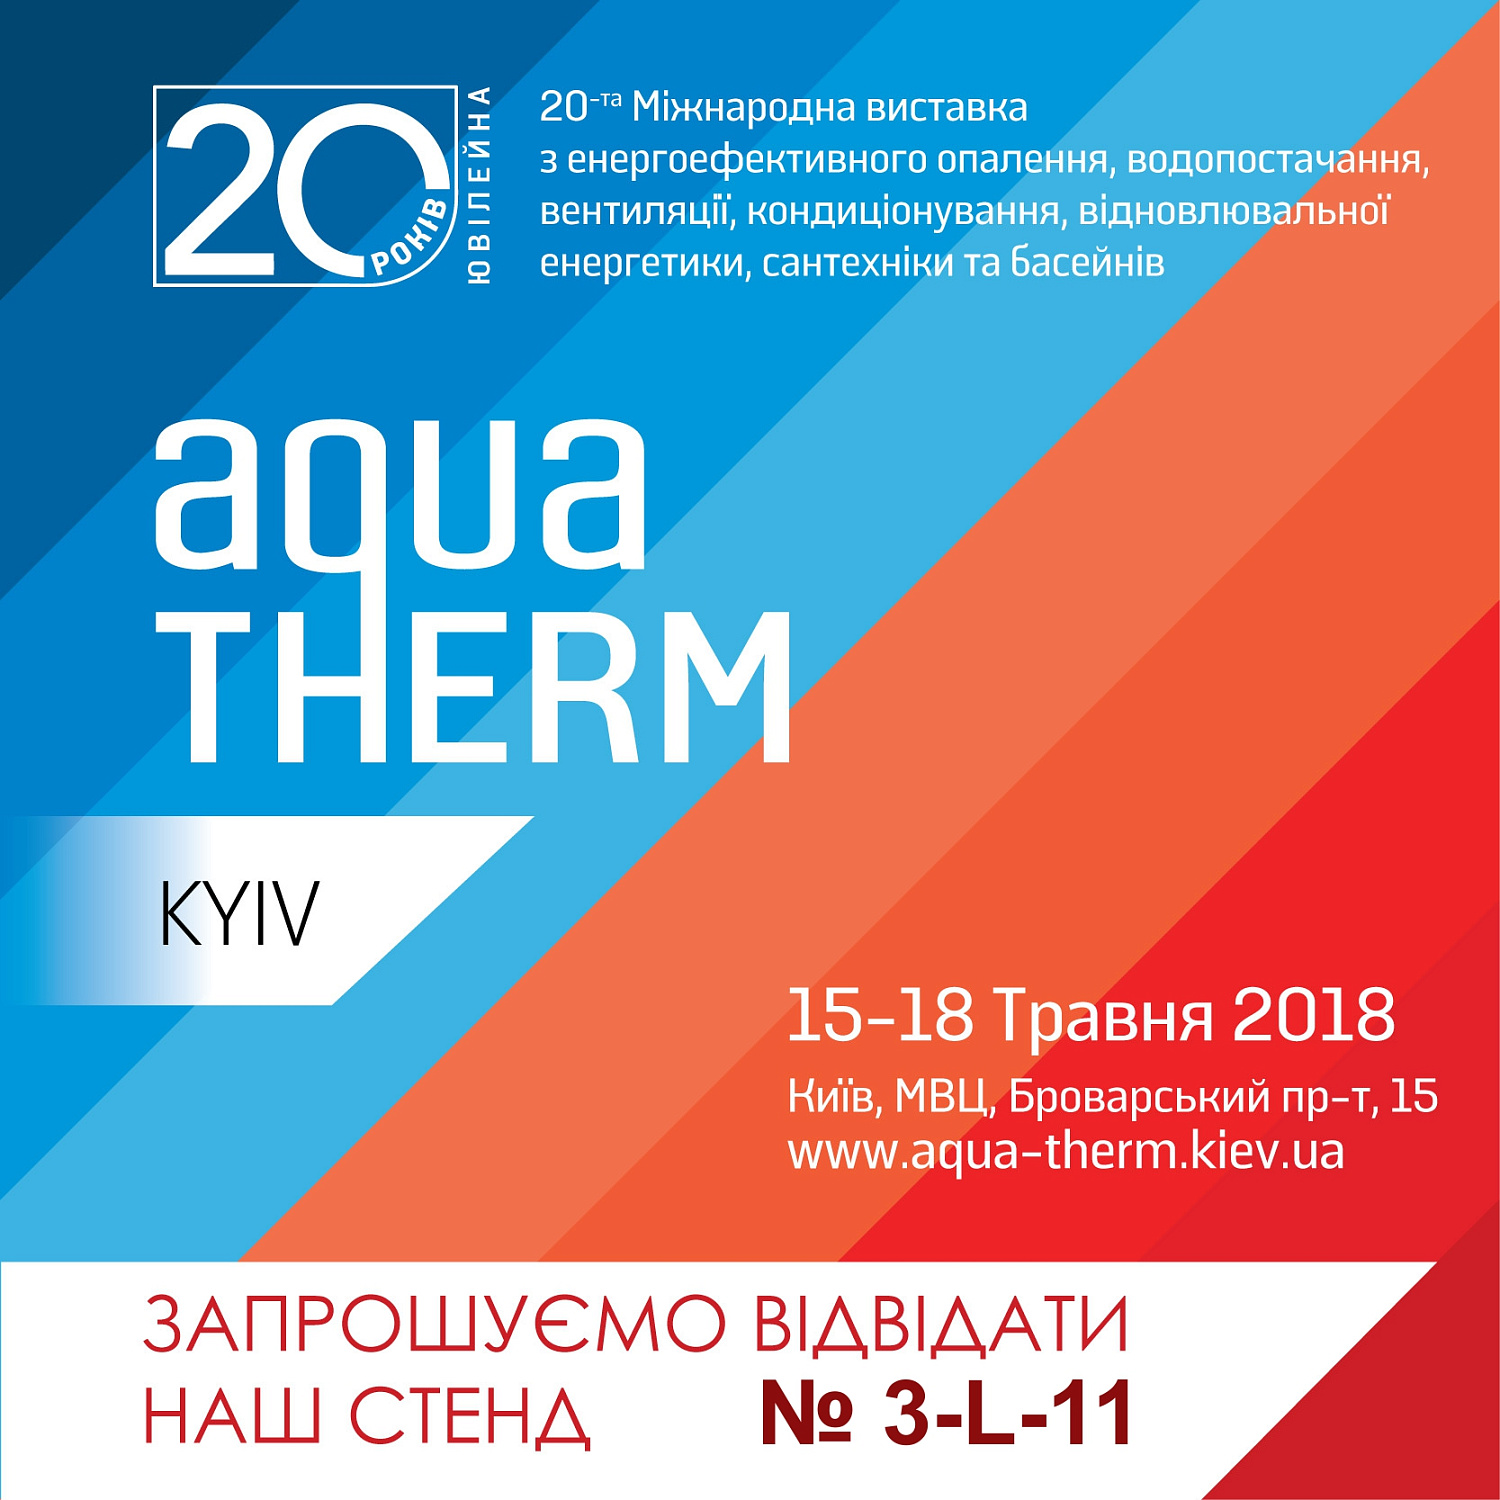 20-та Міжнародна виставка Аква-Терм Київ 2018